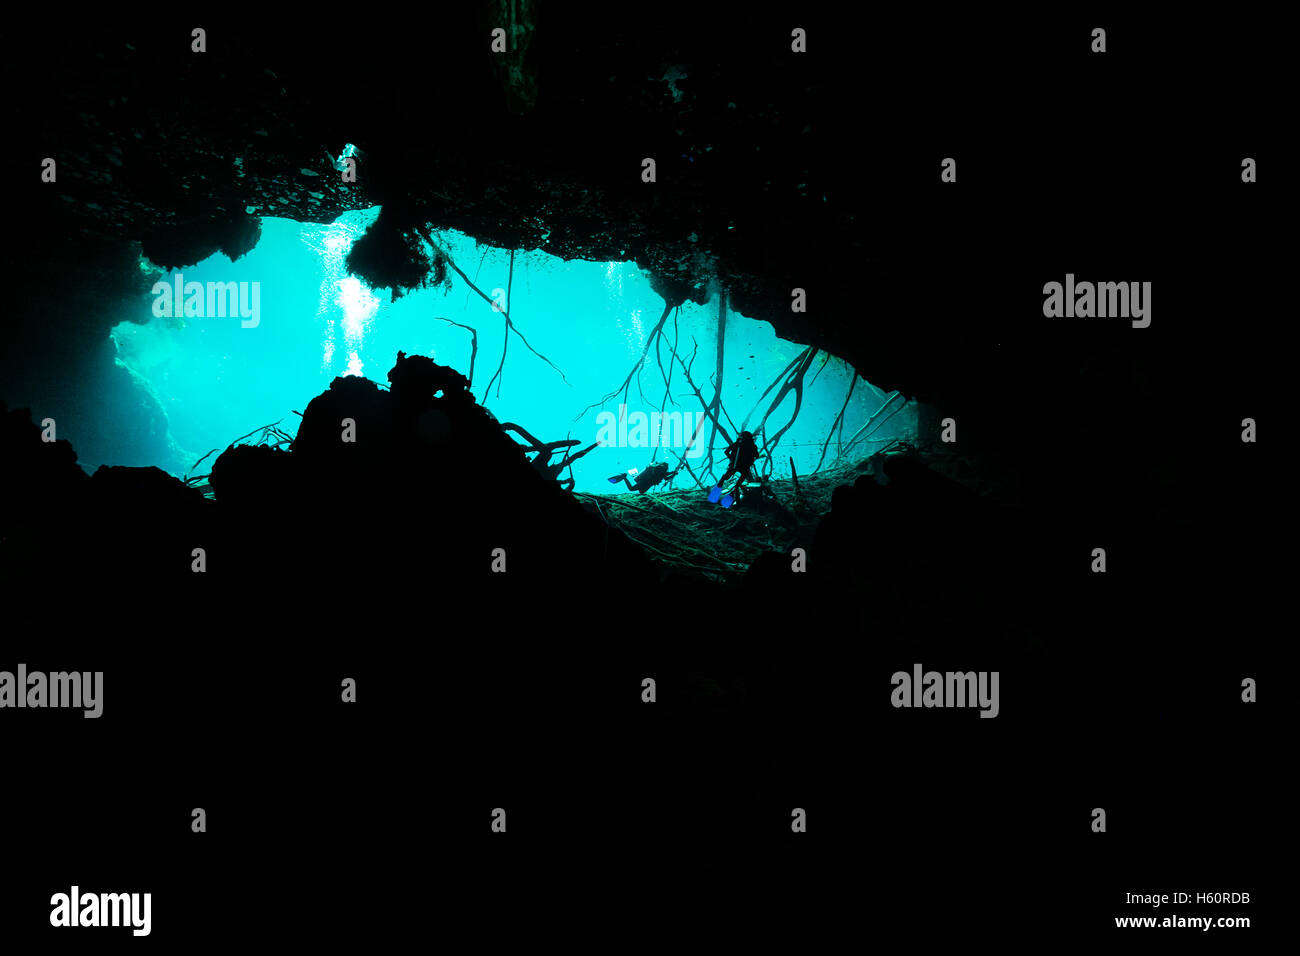 Cenote tulum messico immersione in caverna subacquea Foto Stock